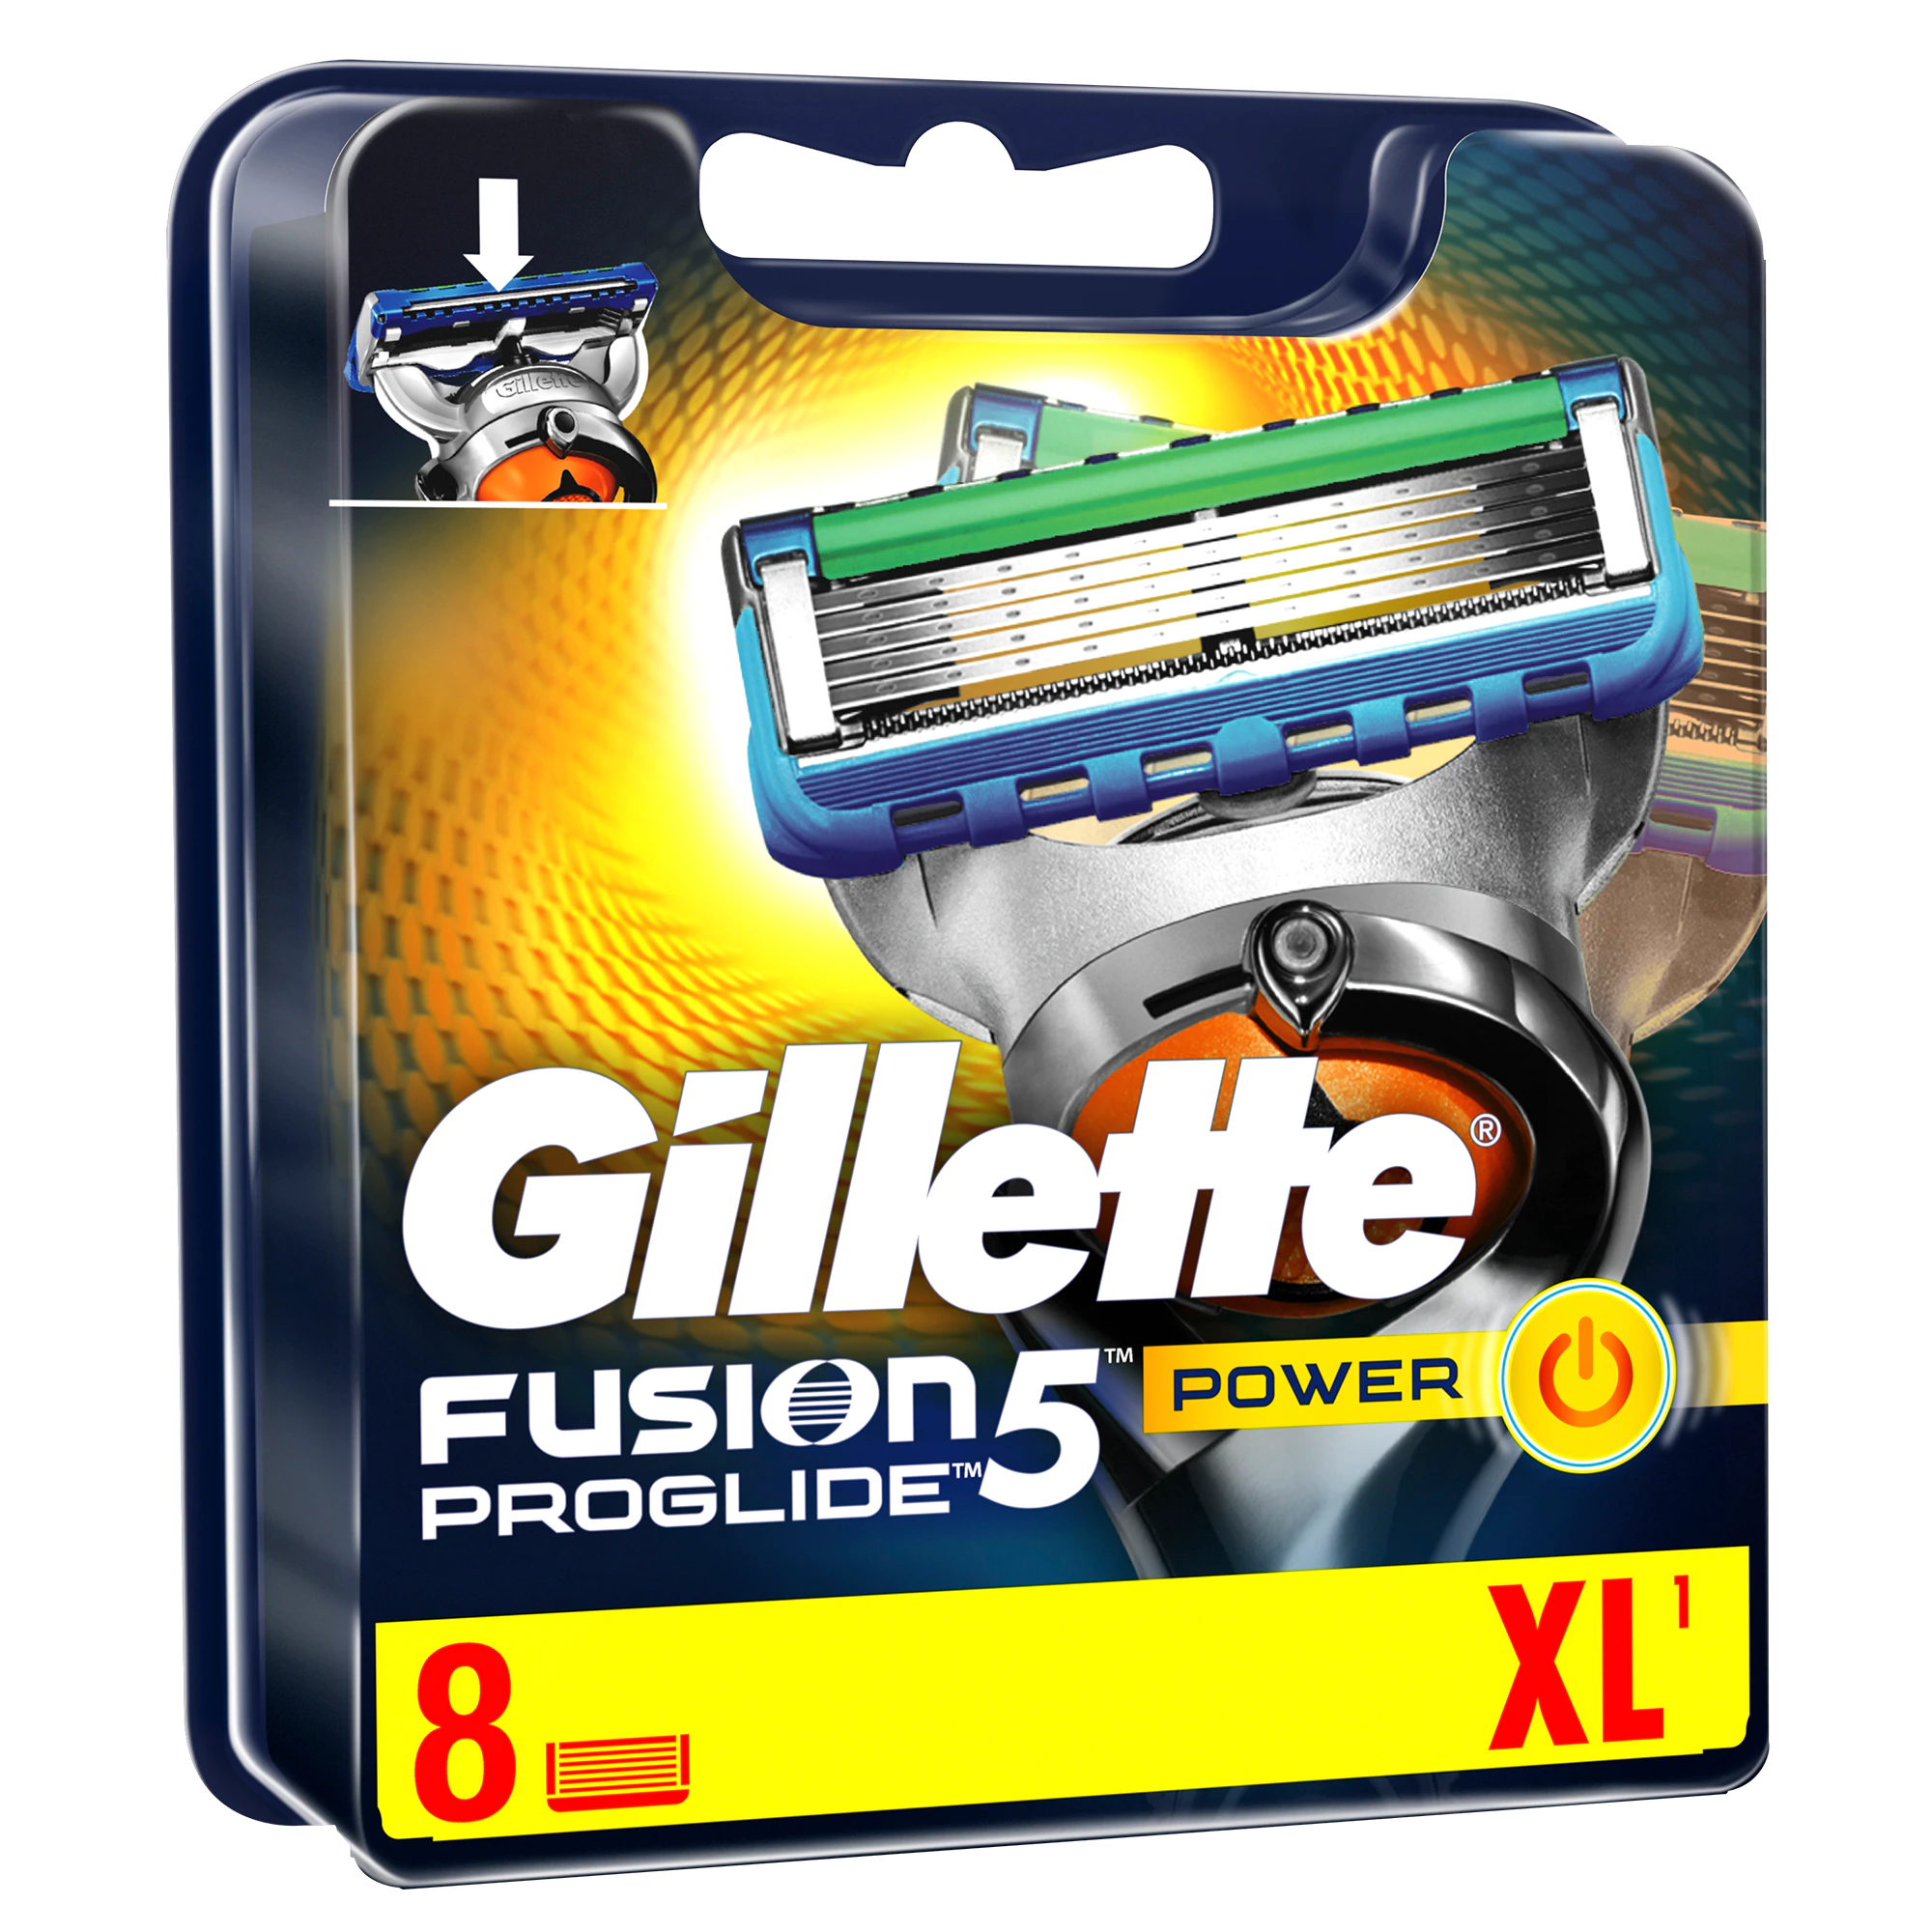 Rezerve Proglide Power pentru Gillette Fusion, 8 bucati, P&G